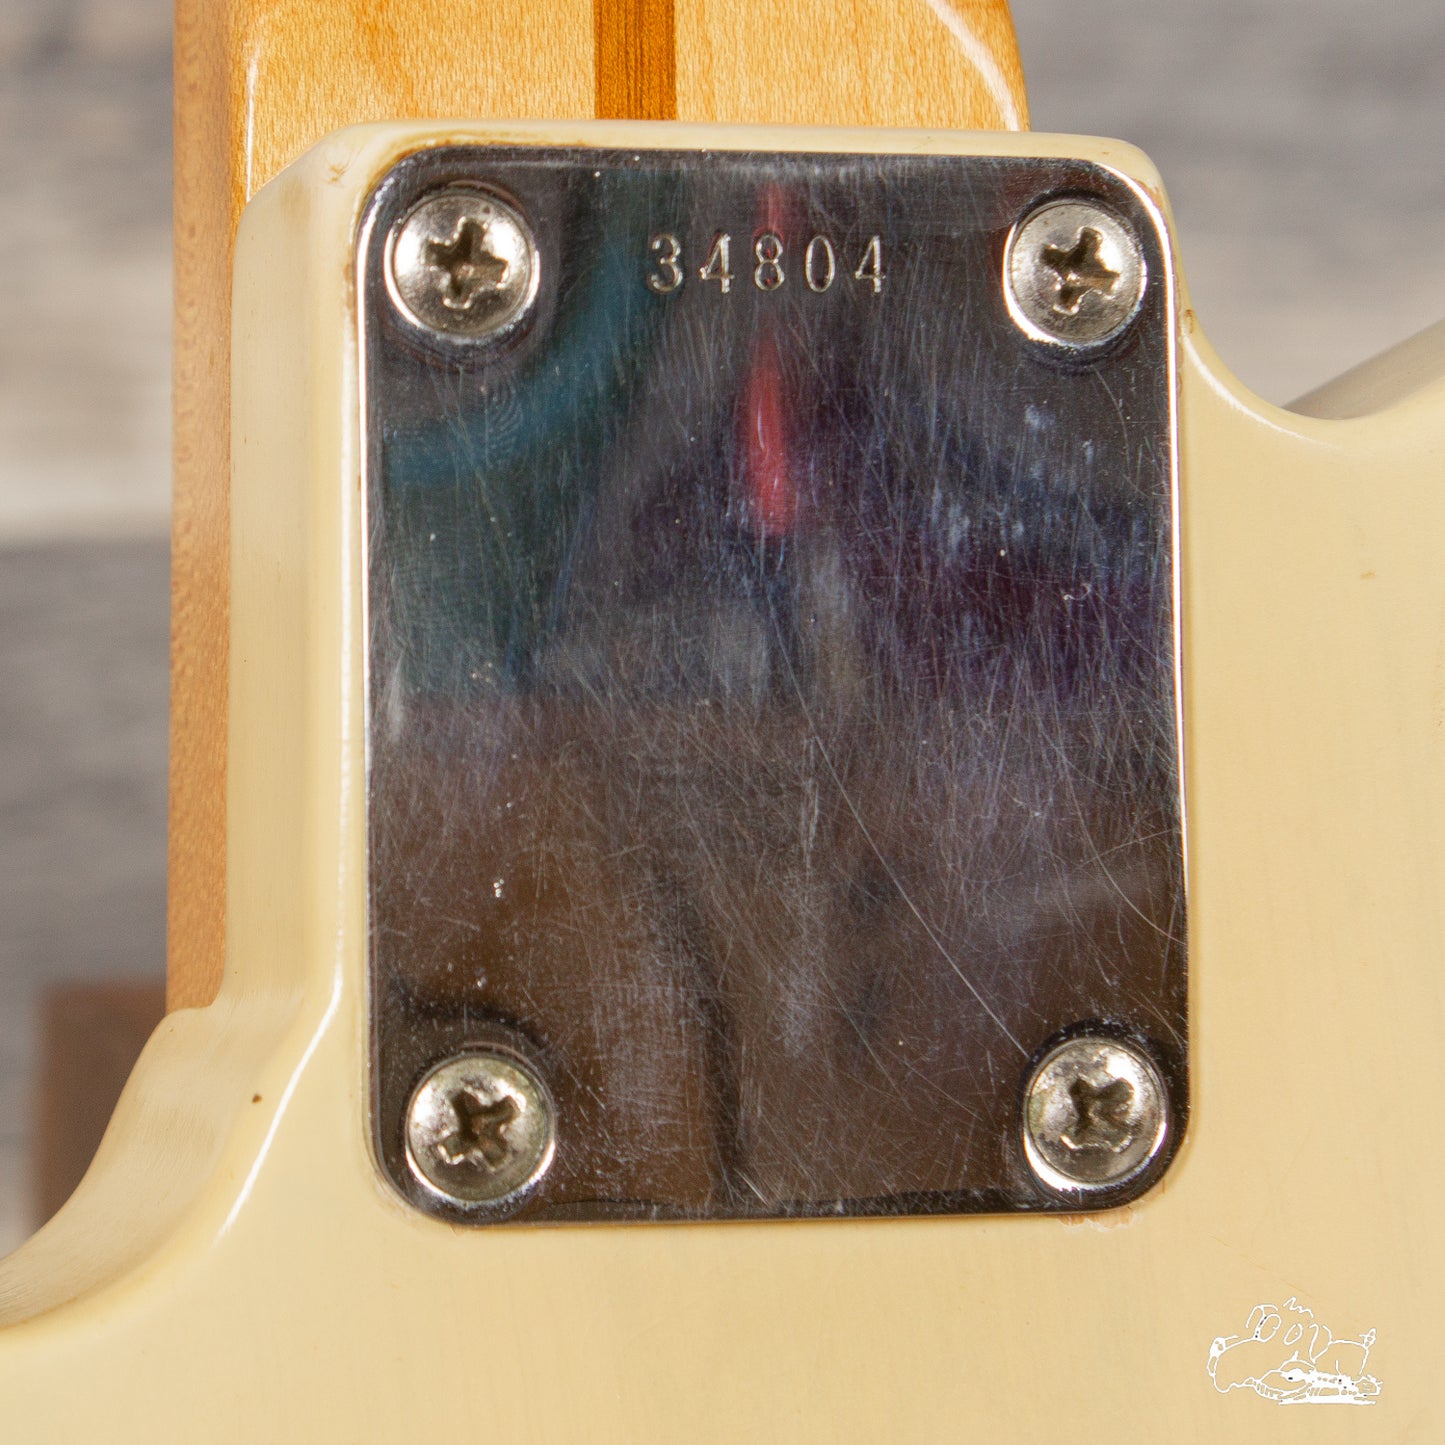 1959 Fender Esquire